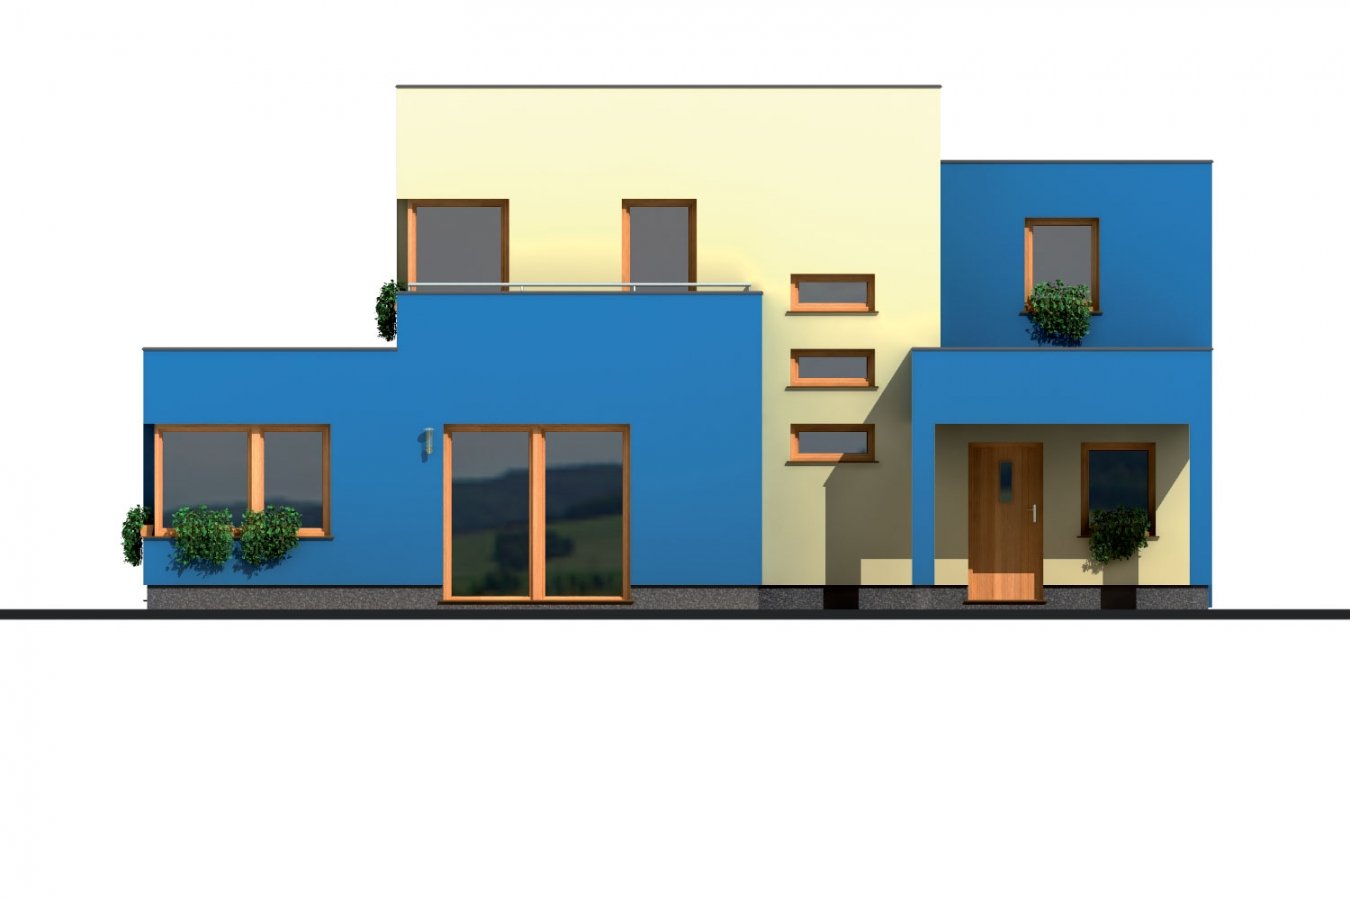 Zrkadlový pohľad 3. - Projekt moderního rodinného domu s plochou střechou, pokojem v přízemí a garáží.